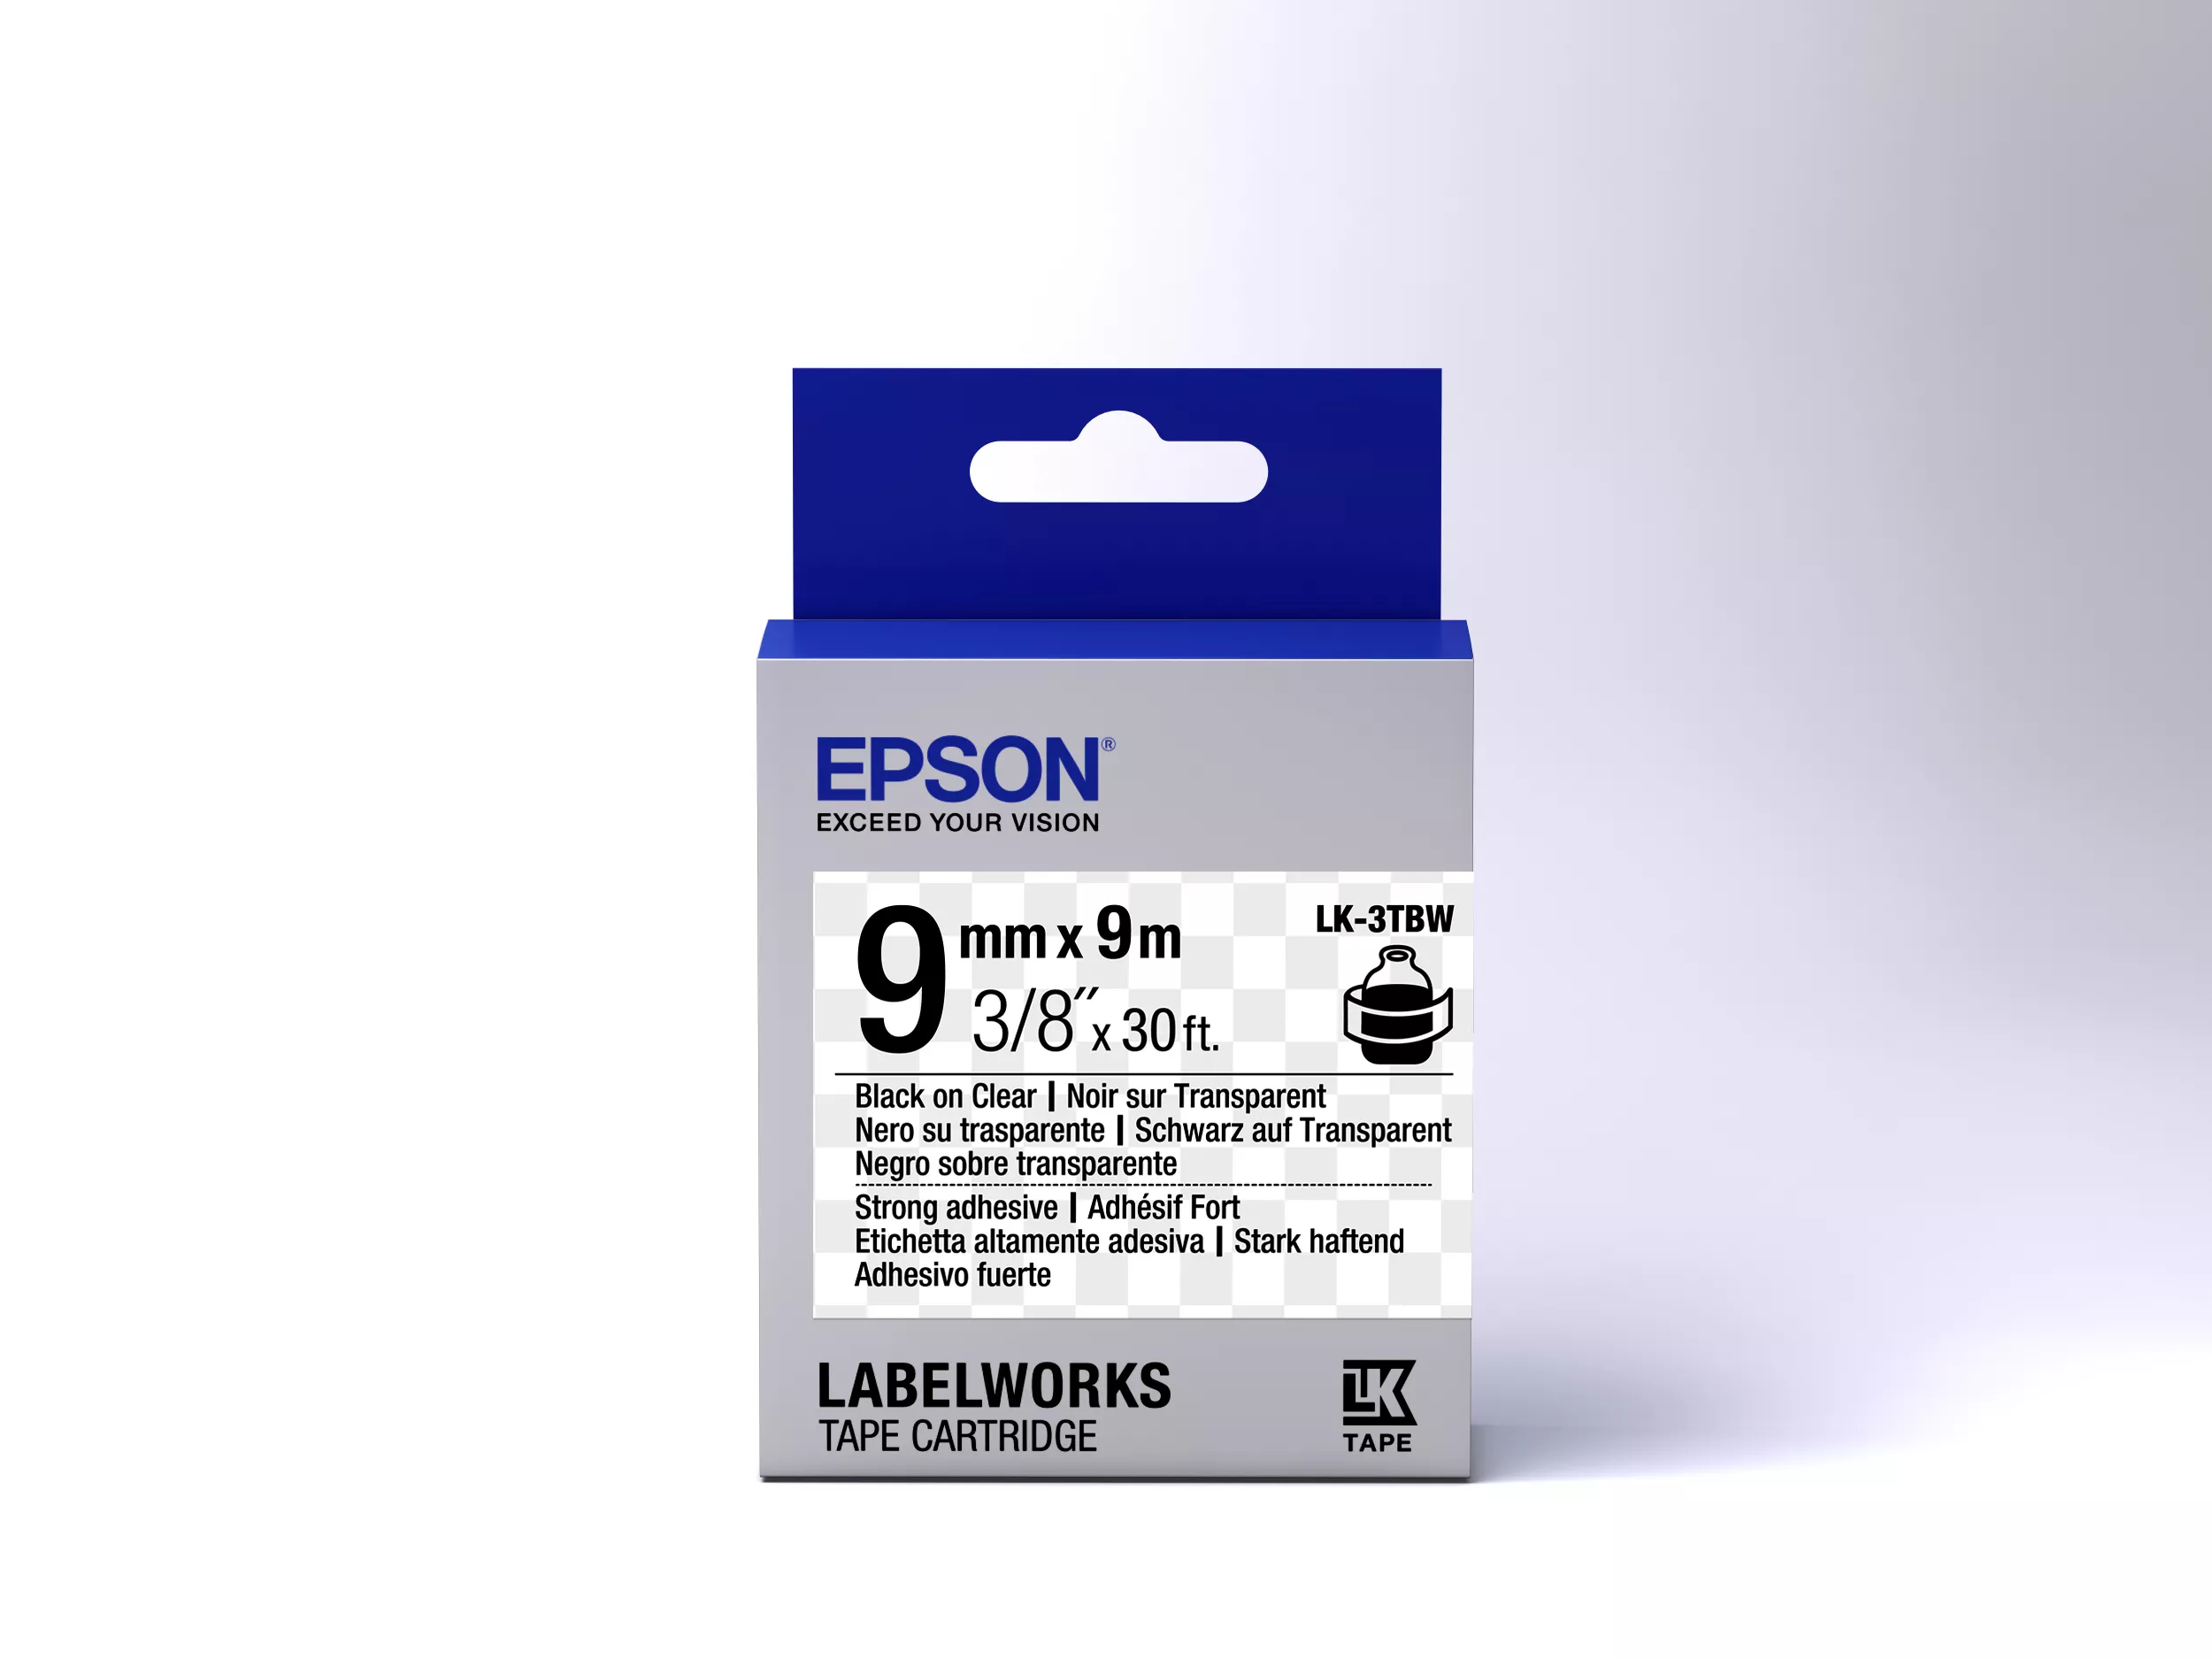 Vente Epson LK-3TBW - Adhésif Fort - Noir sur Epson au meilleur prix - visuel 2